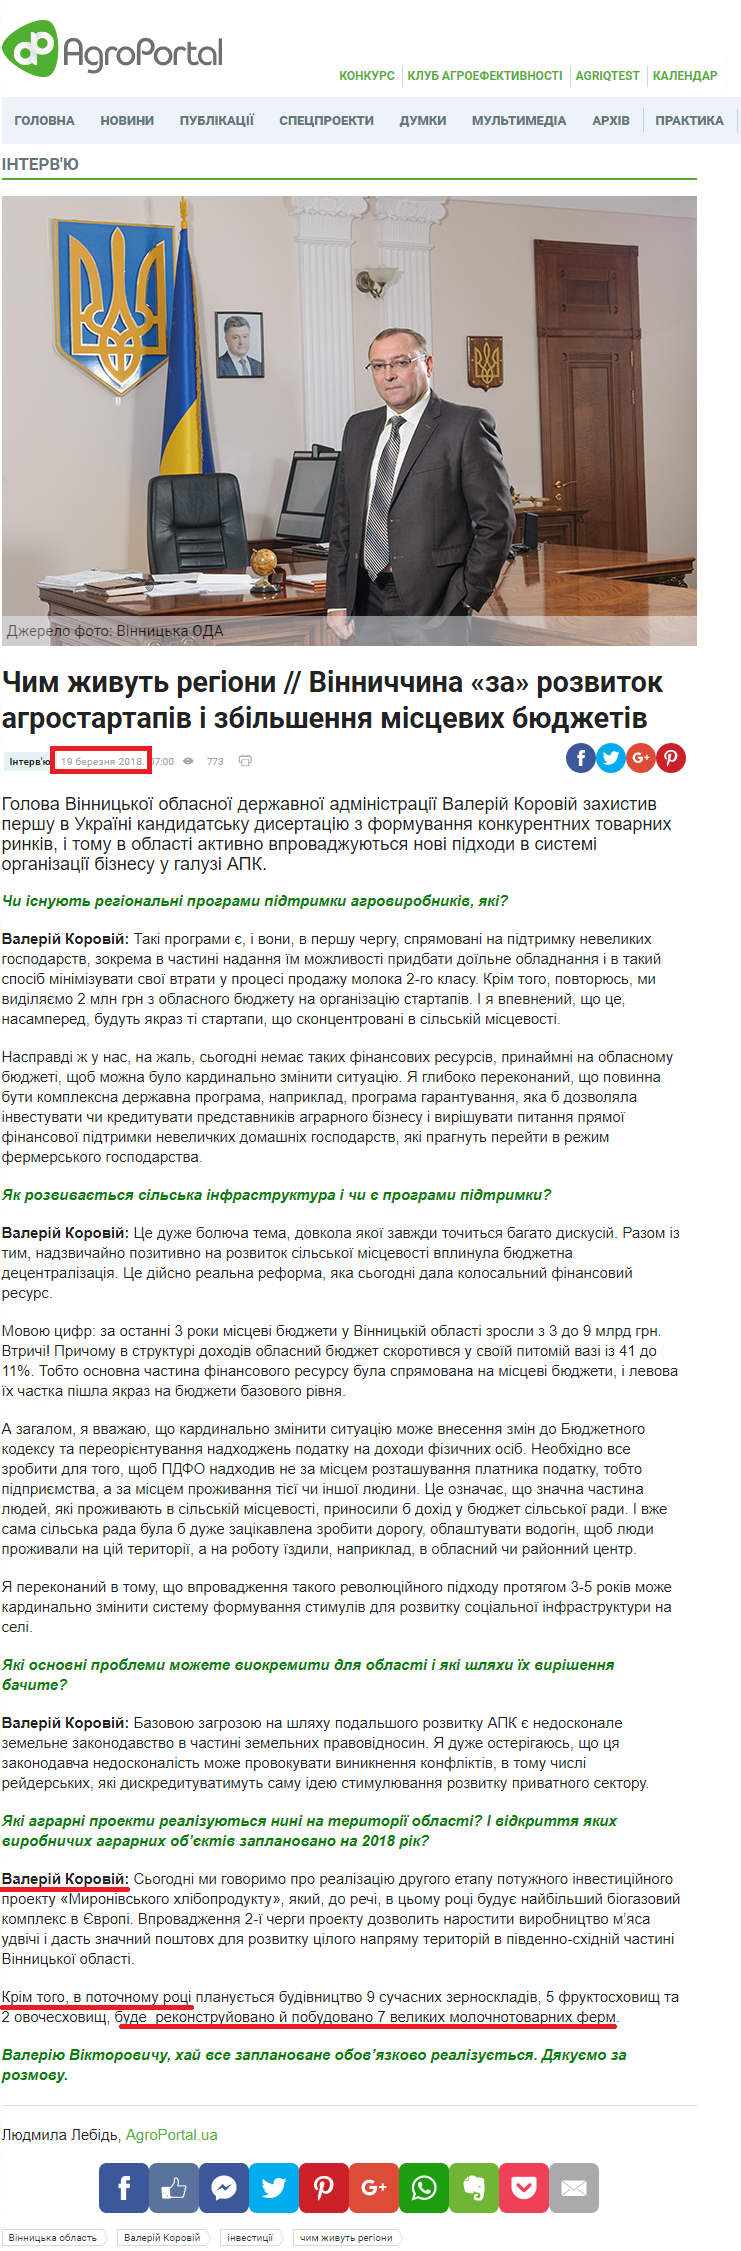 http://agroportal.ua/ua/publishing/intervyu/chem-zhivut-regiony-vinnitchina-razvitie-agrostartapov-i-uvelichenie-mestnykh-byudzhetov/#